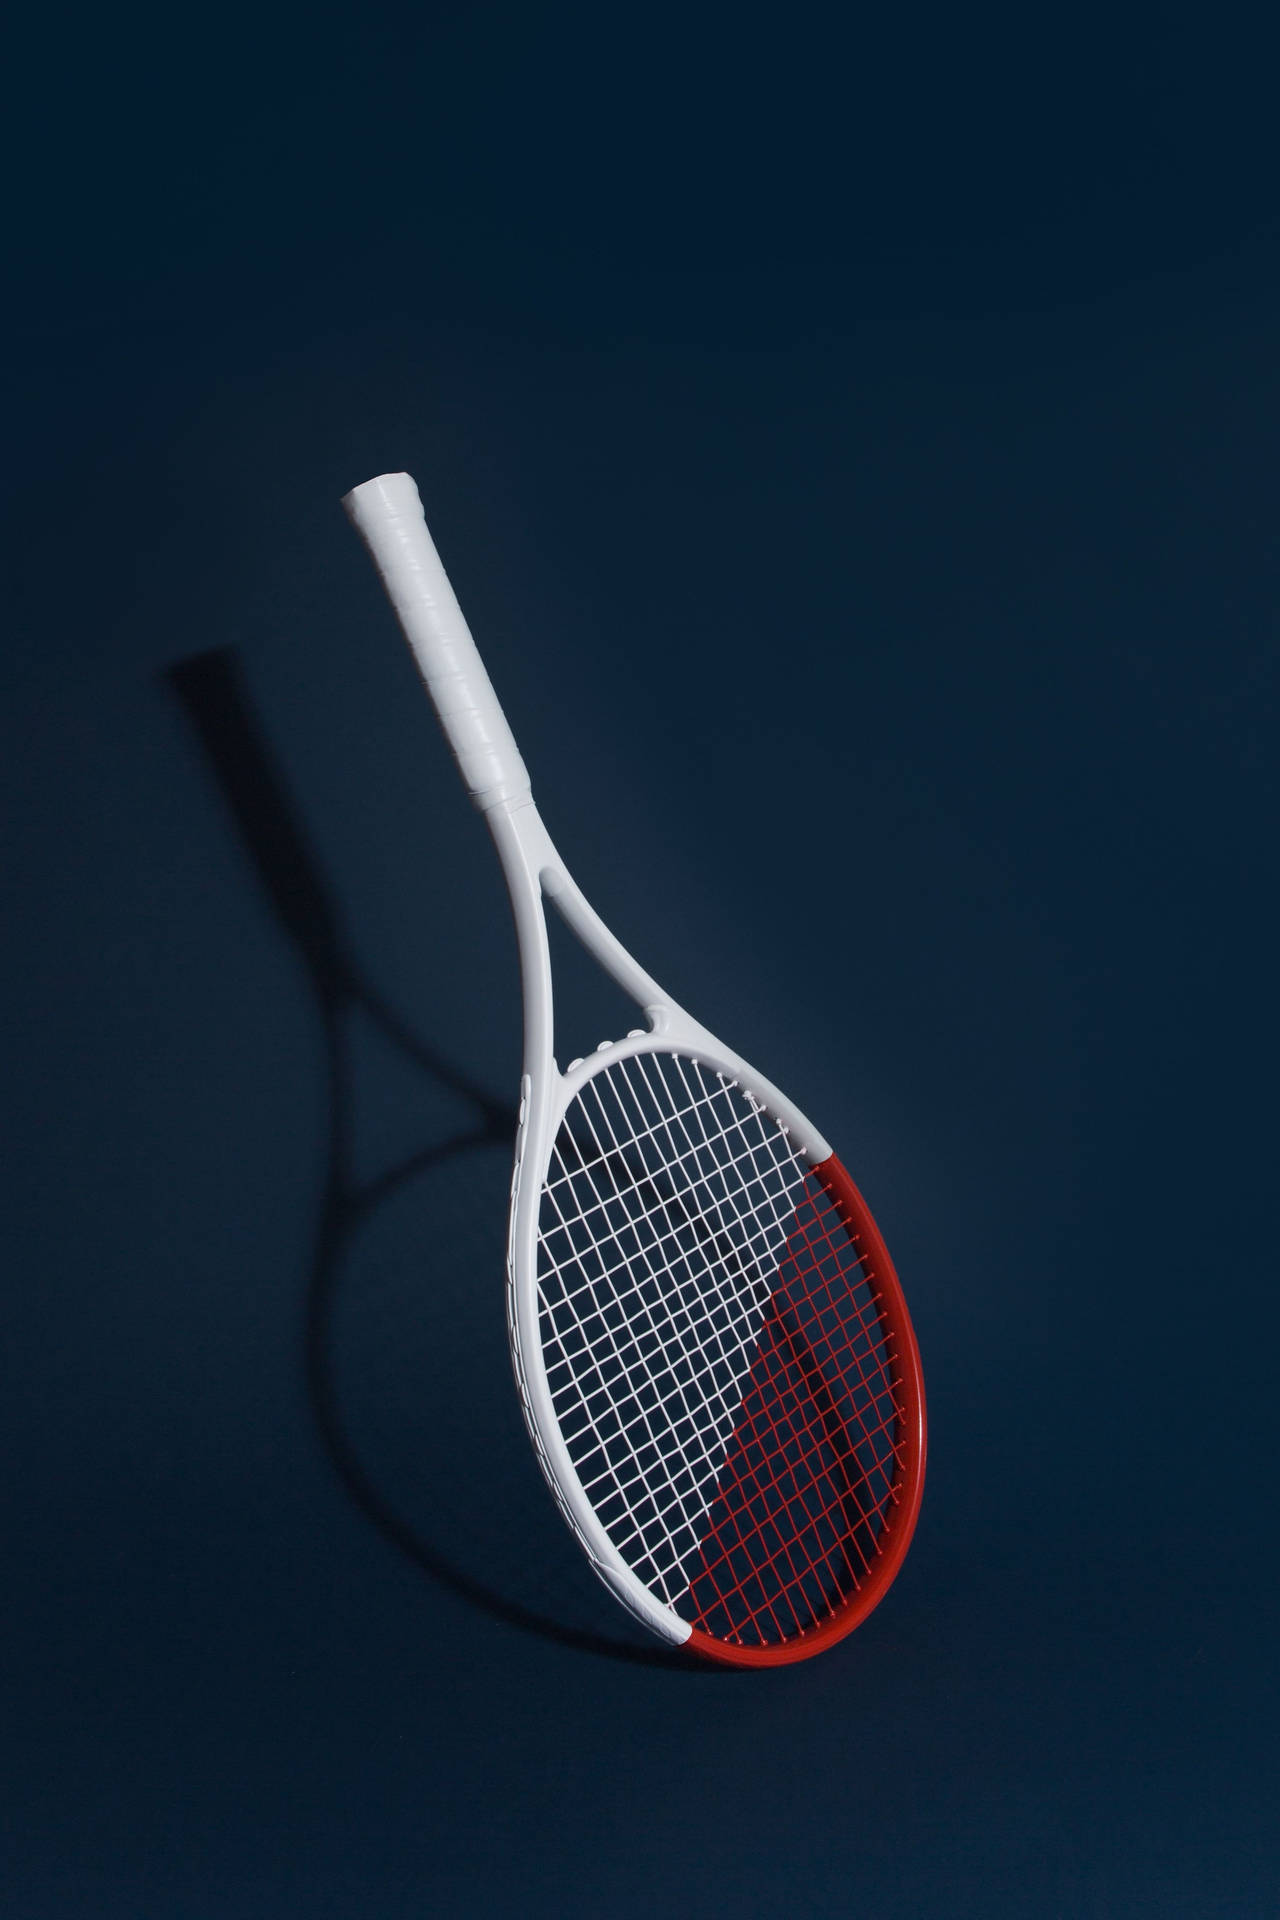 Teléfonocon Imagen De Raqueta De Tenis Blanca Y Roja. Fondo de pantalla